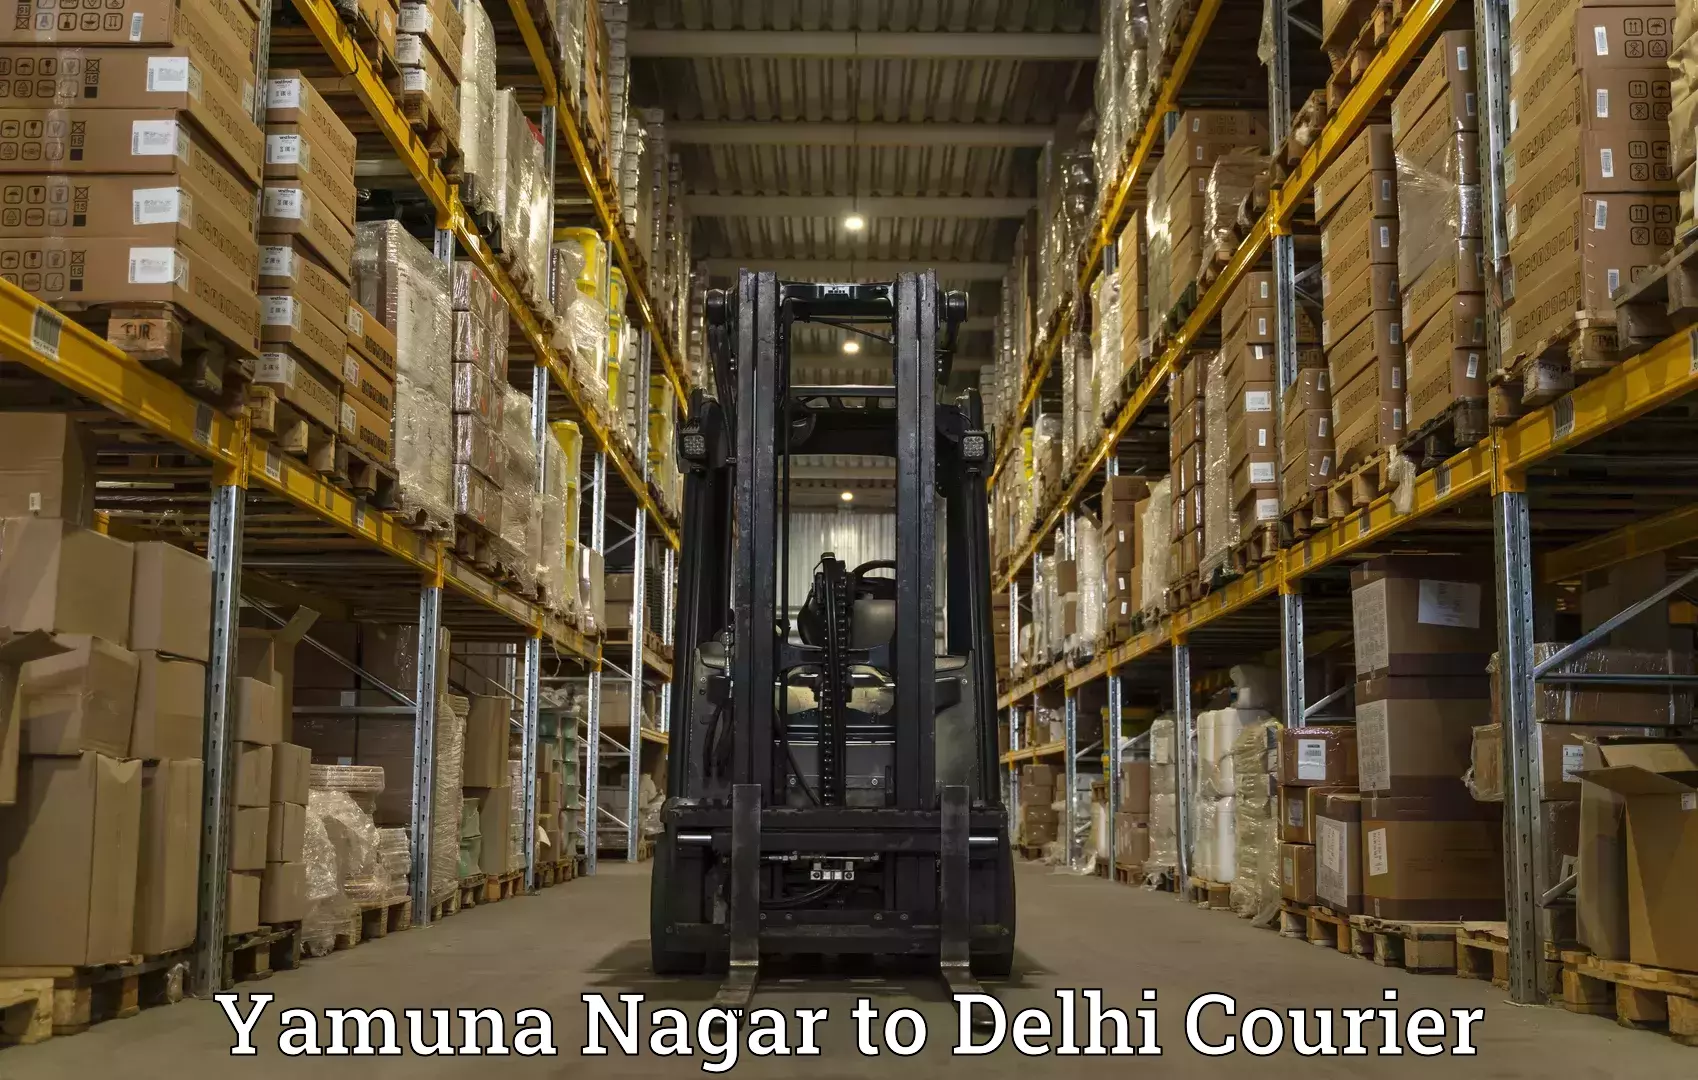 Express delivery solutions Yamuna Nagar to Kalkaji